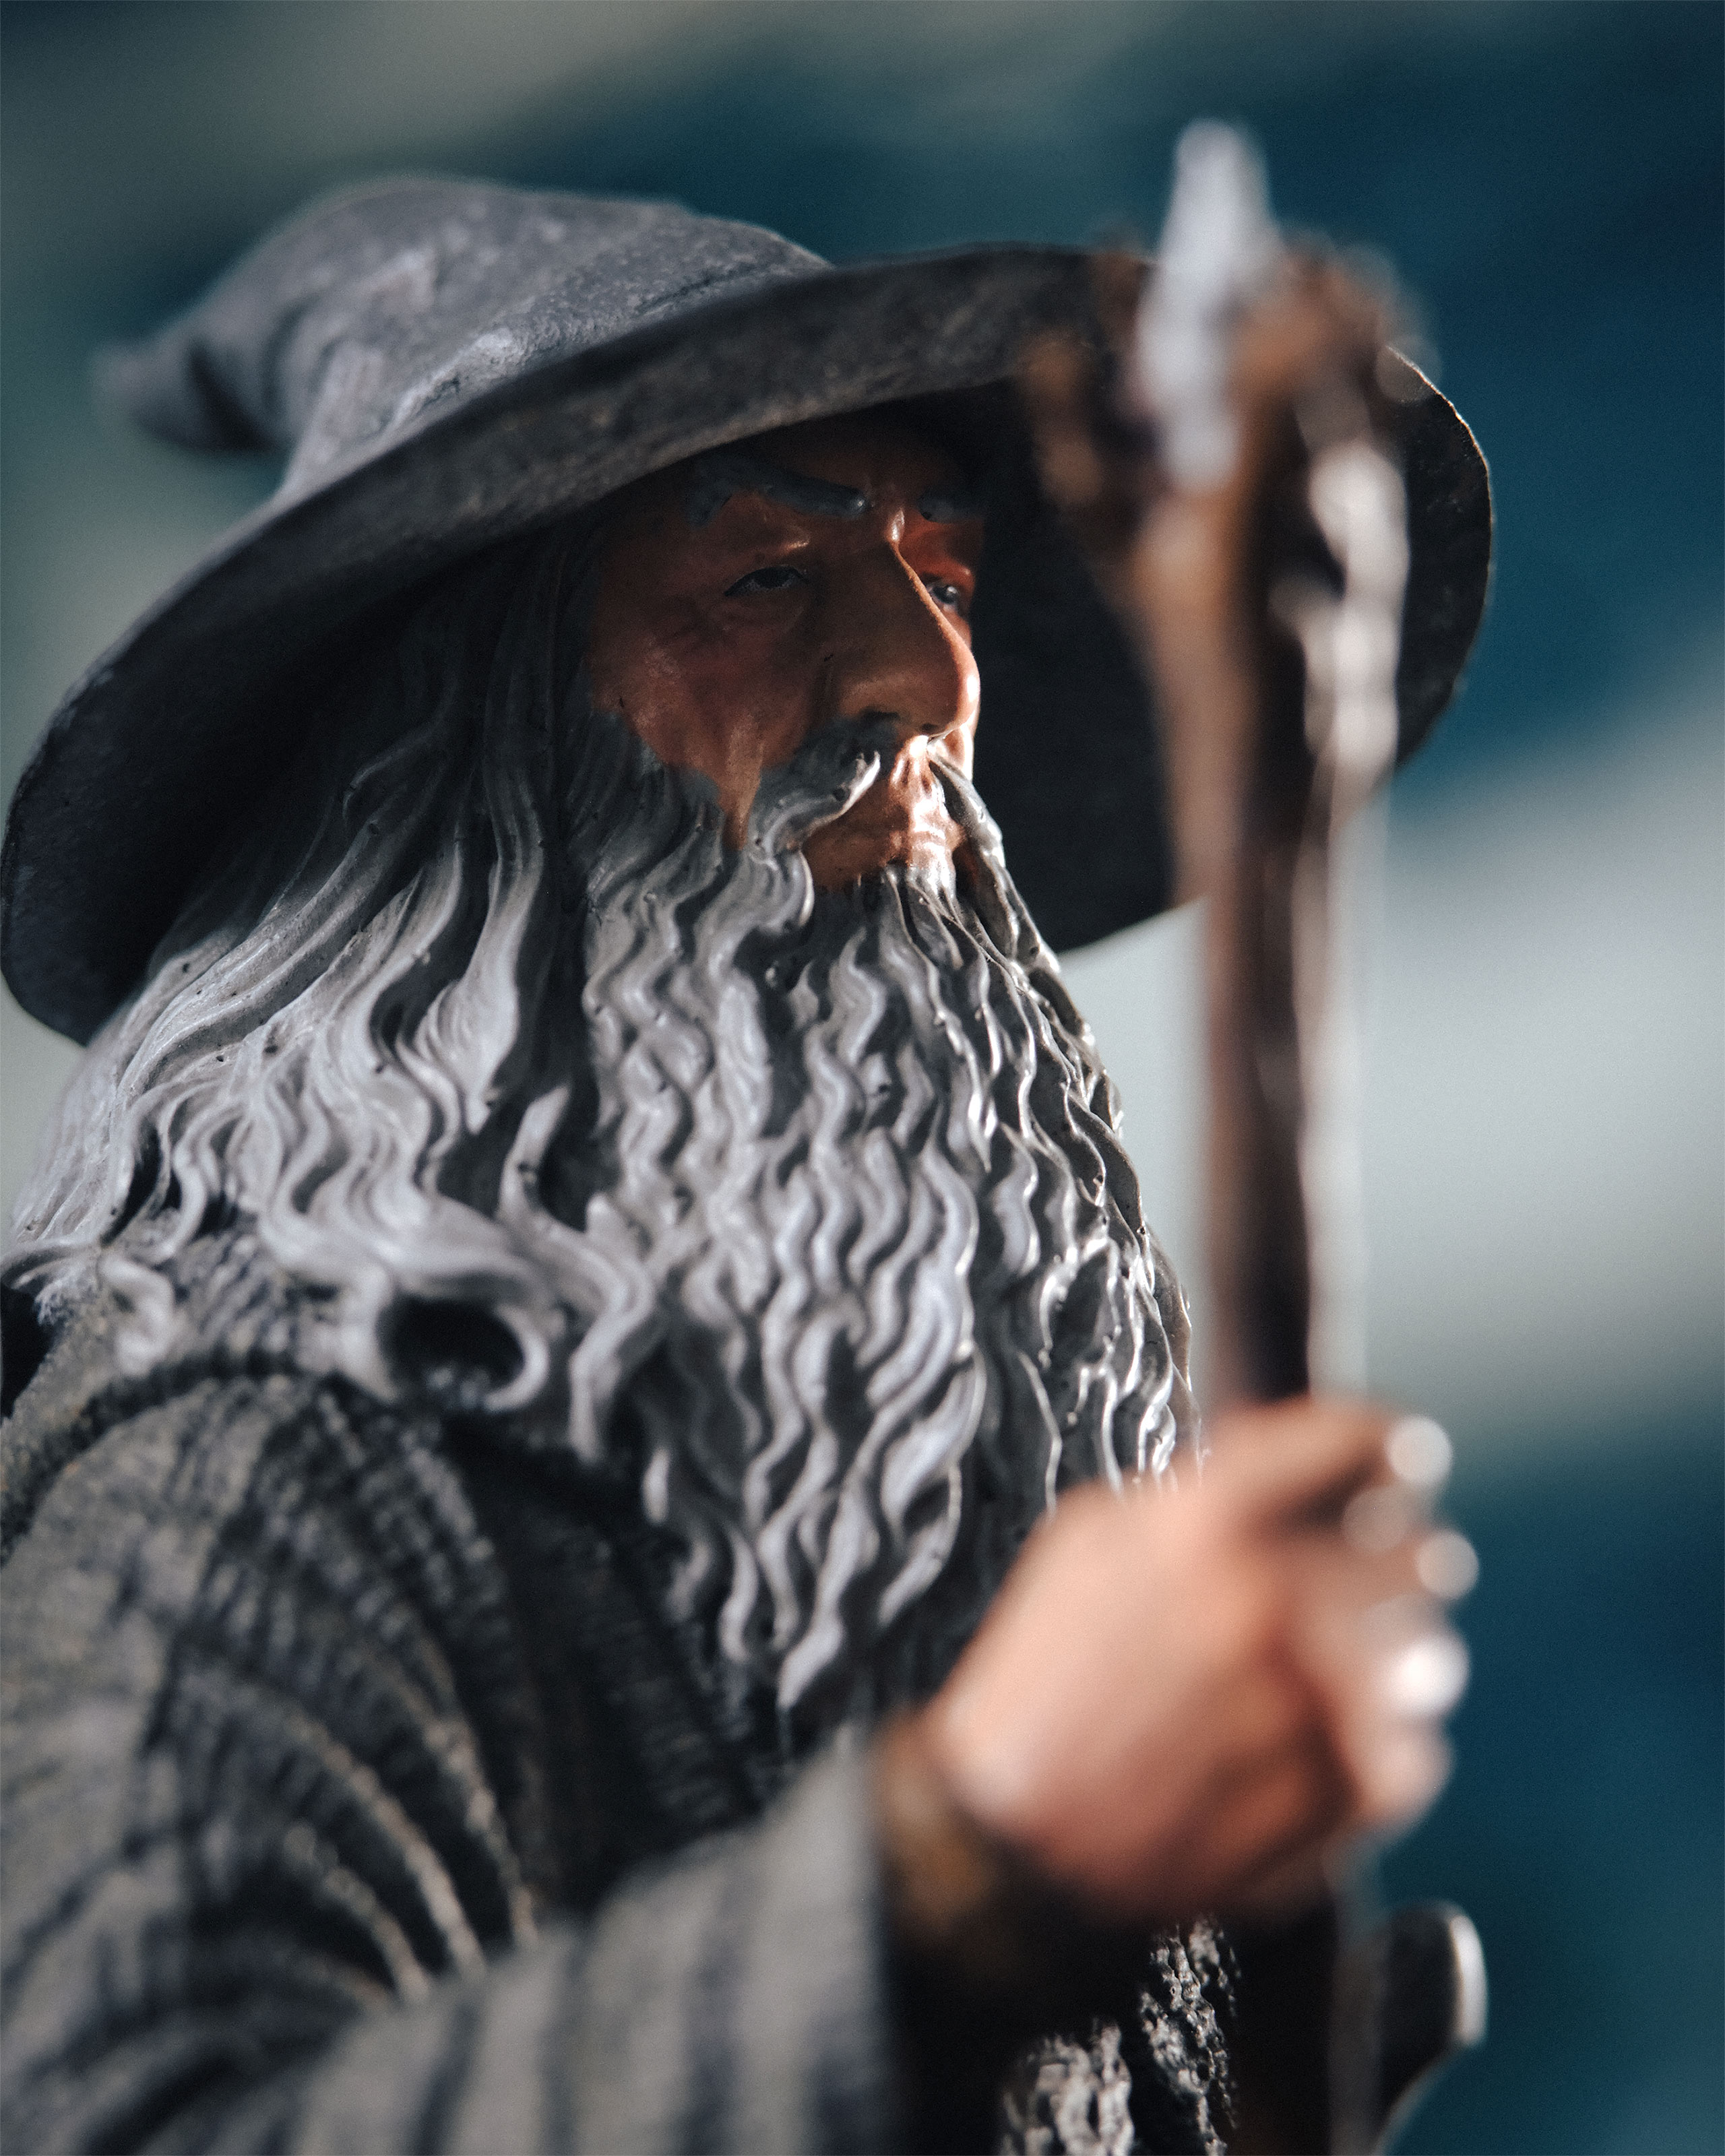 Herr der Ringe - Gandalf der Graue Figur